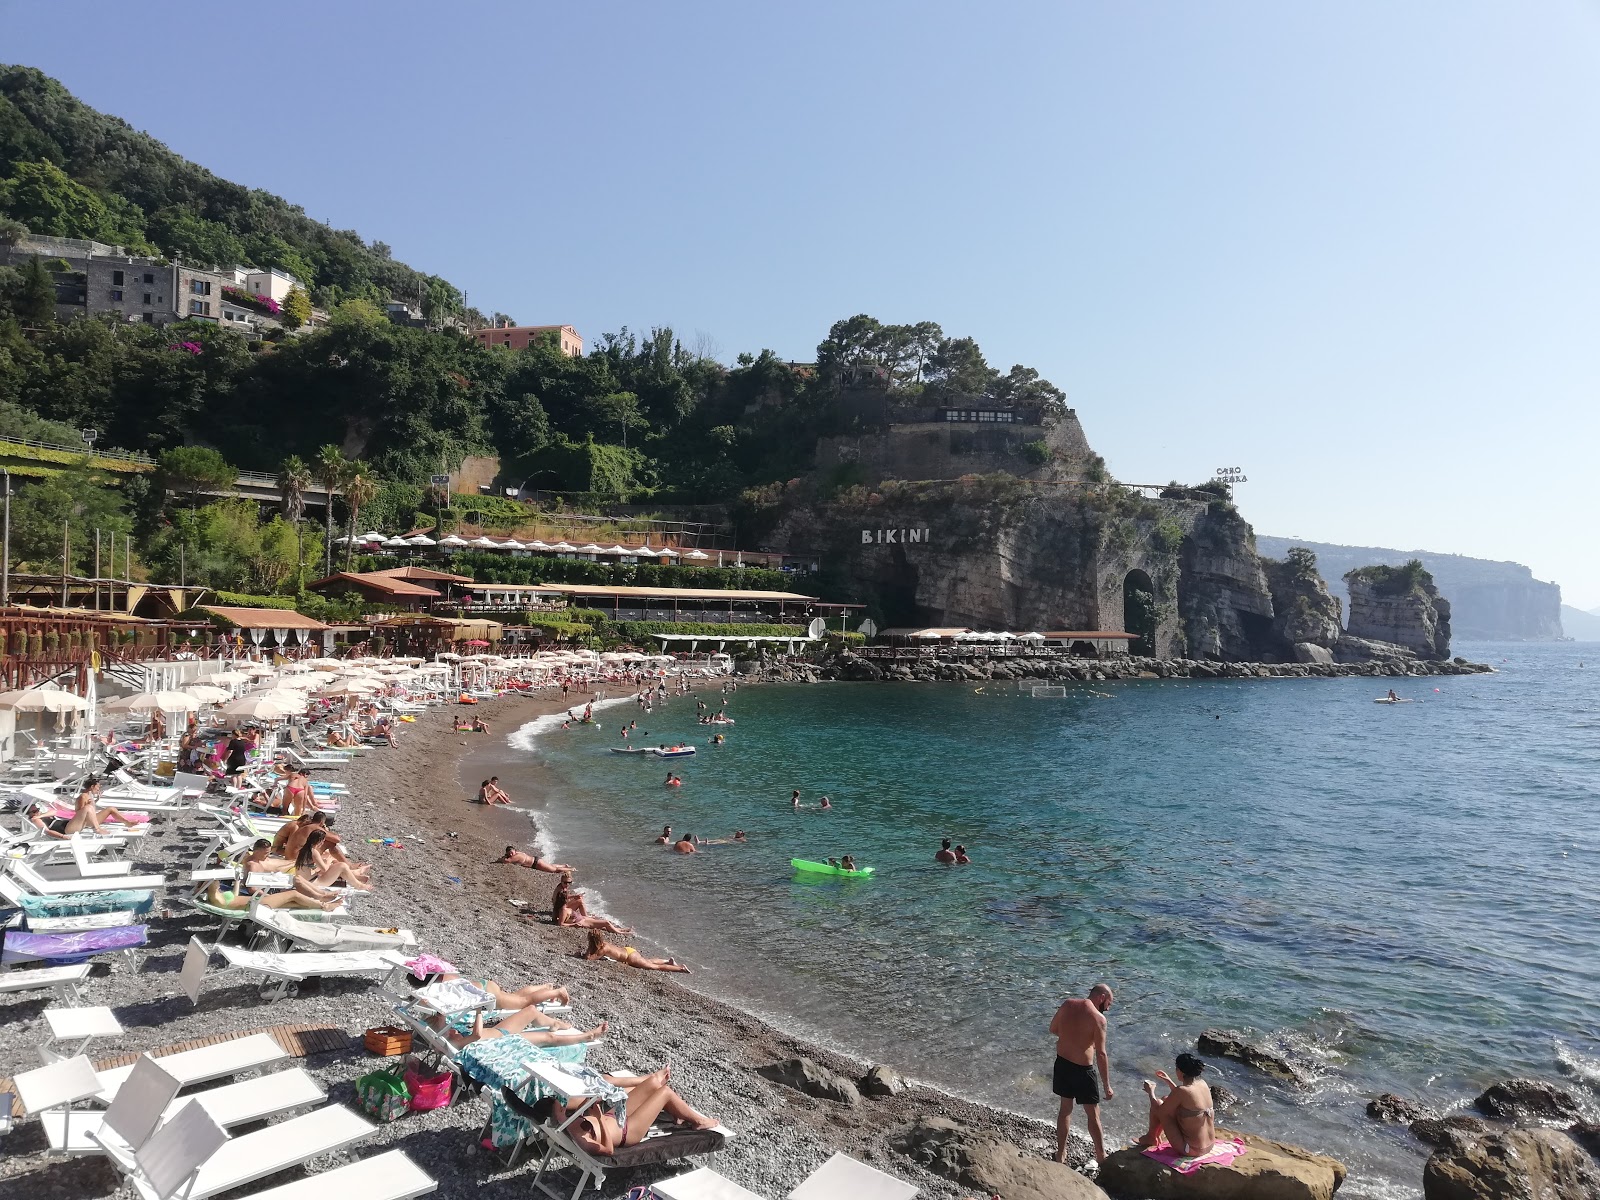 Il Bikini beach的照片 带有蓝色的水表面